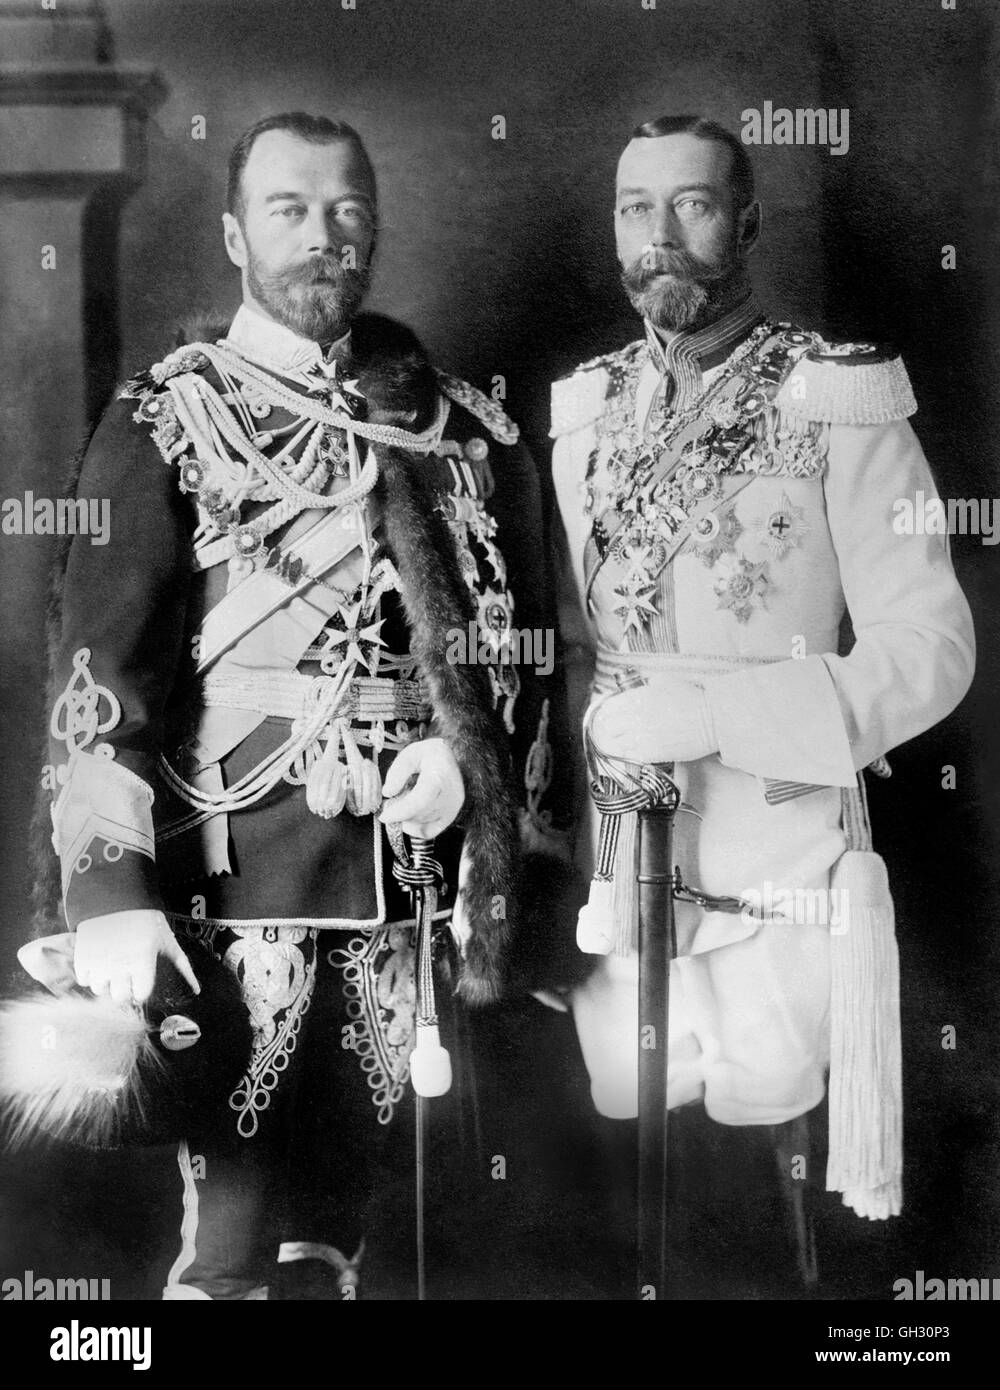 George V und Zar Nikolaus II. Porträt von König Georg v. (1865-1936) und Zar Nikolaus II. (1868-1918). Foto von Bains News Service, c.1913. Stockfoto